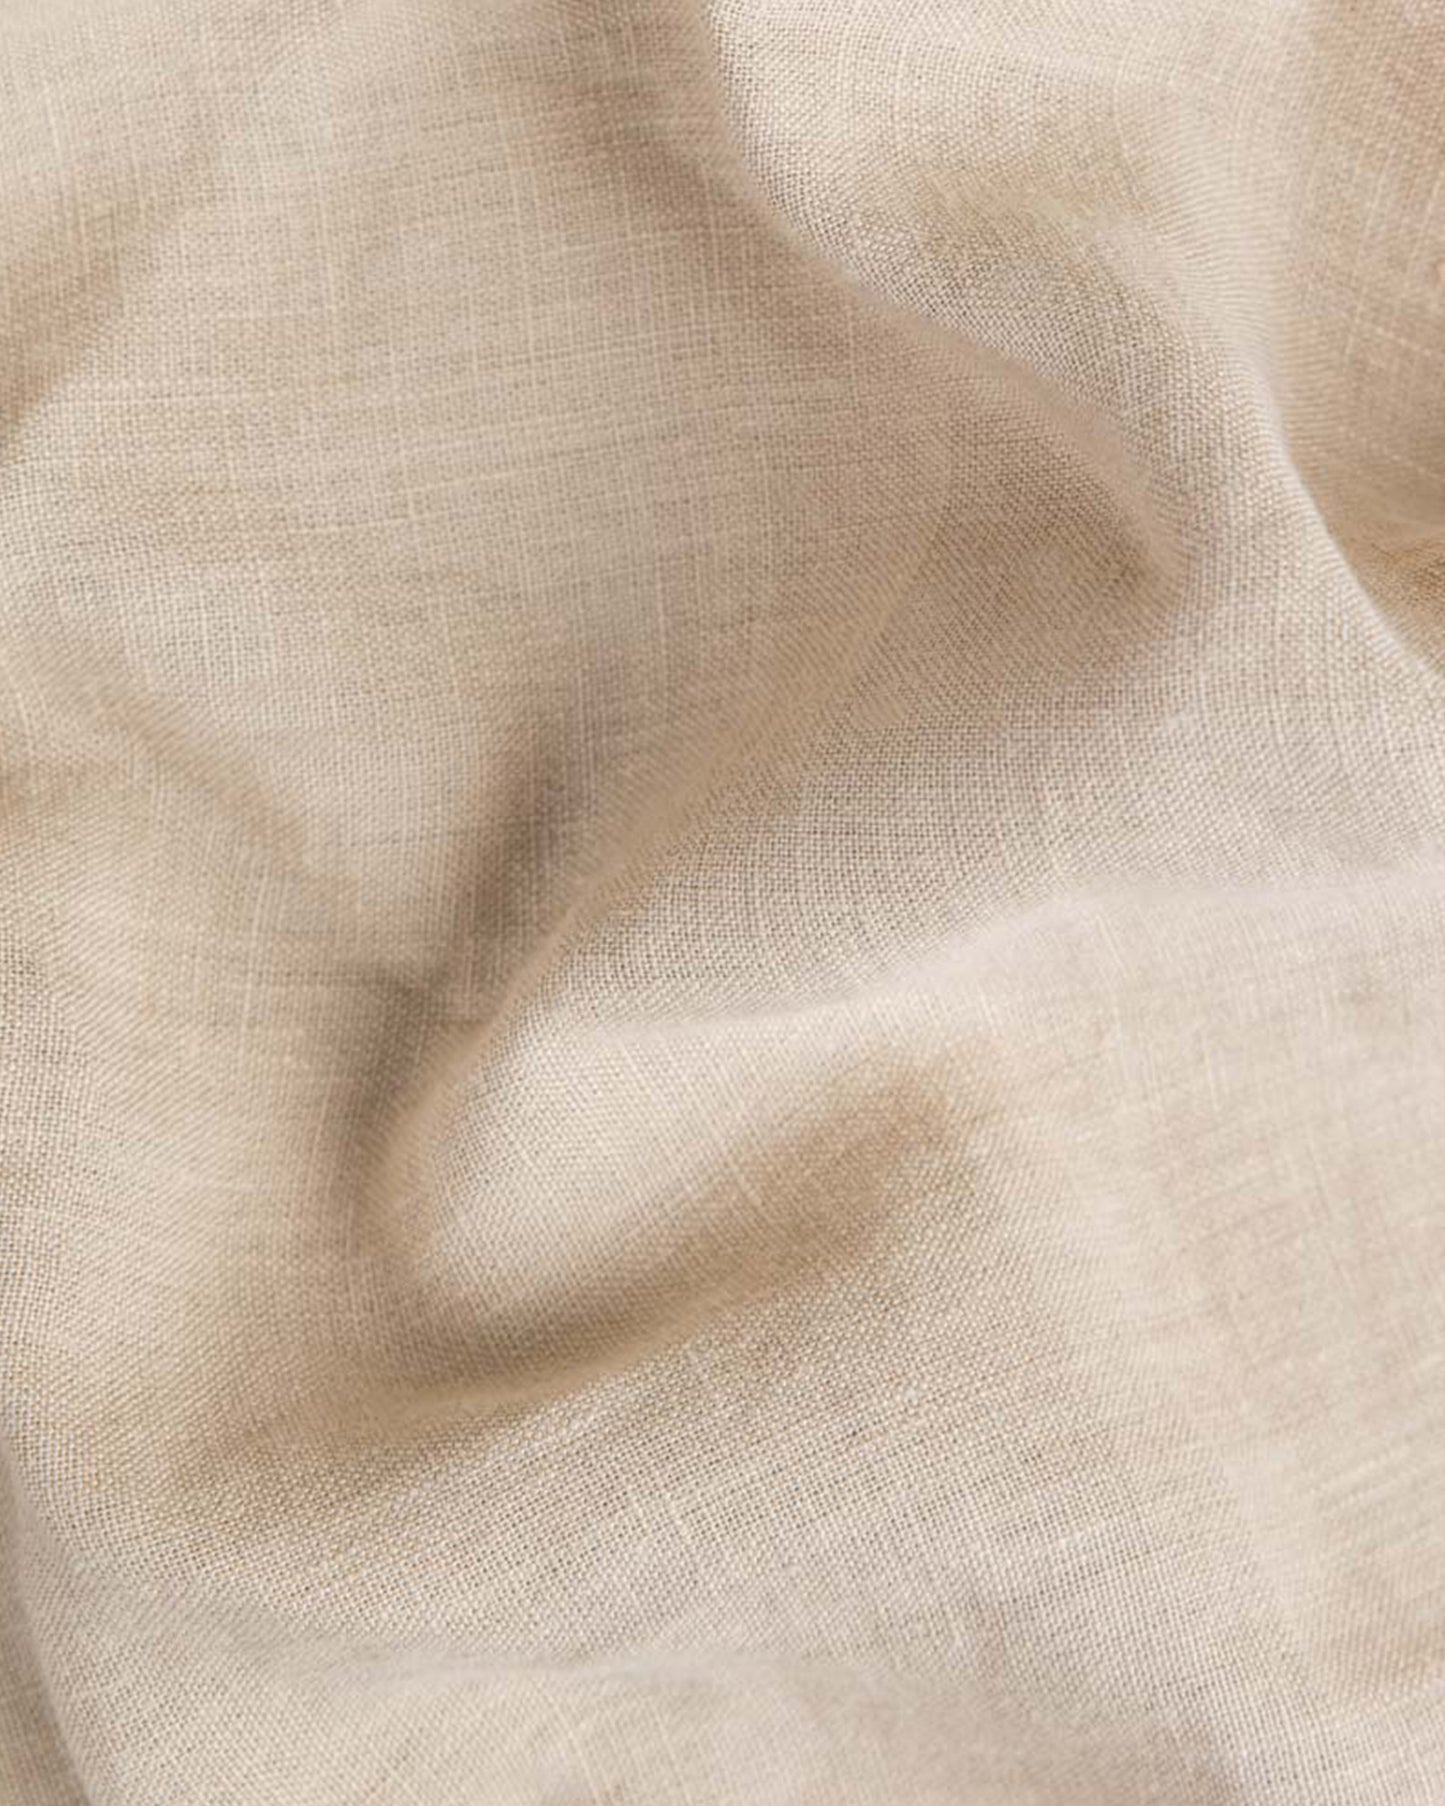 Mermaid ruffle linen pillowcase in Natural linen